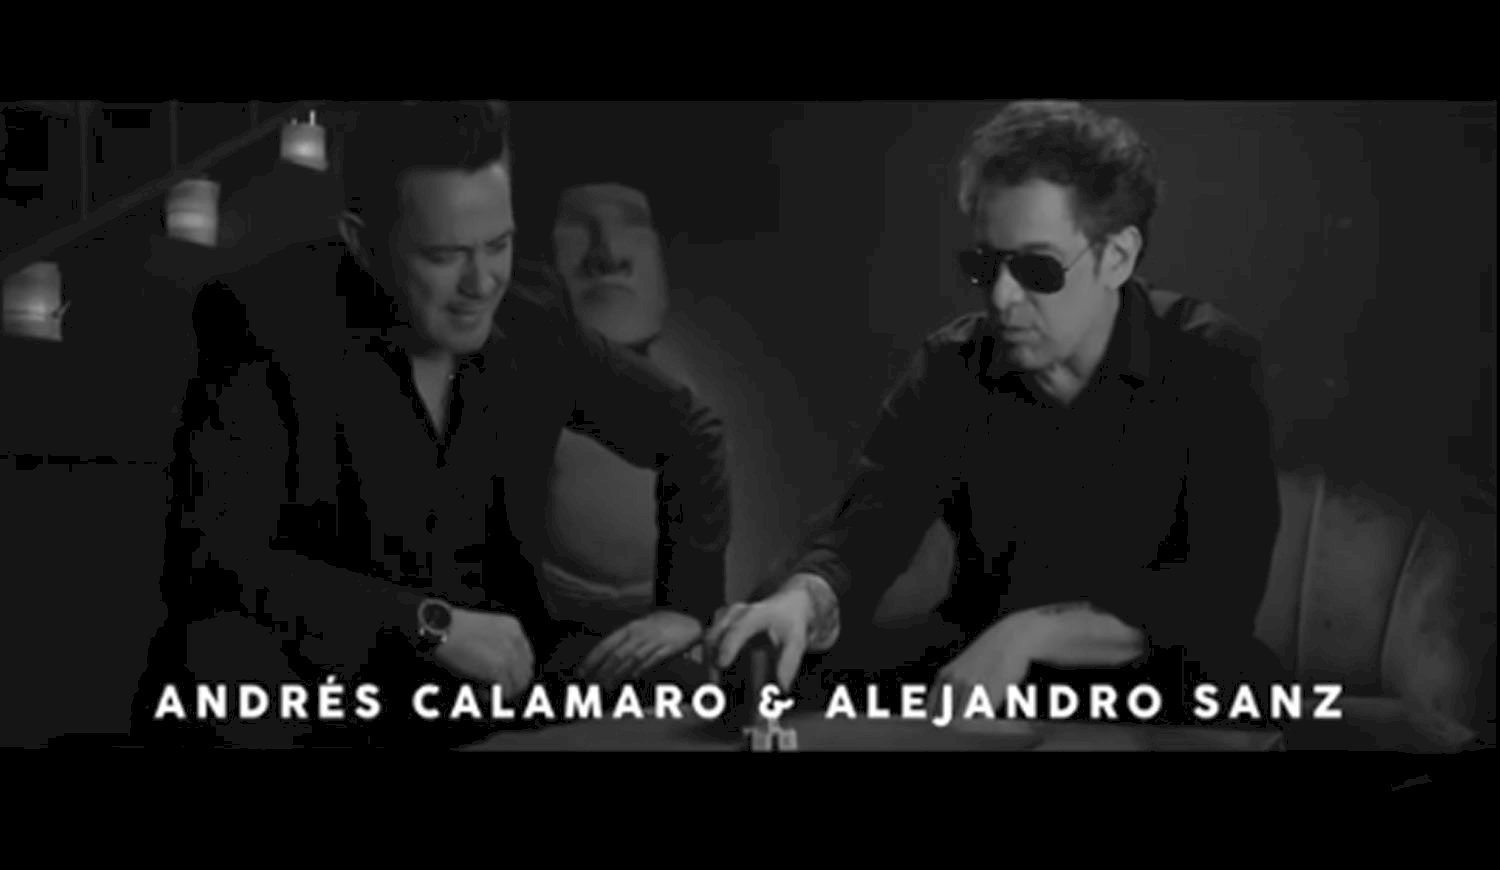 Andrés Calamaro lanza nueva versión de ‘Flaca’ con Alejandro Sanz